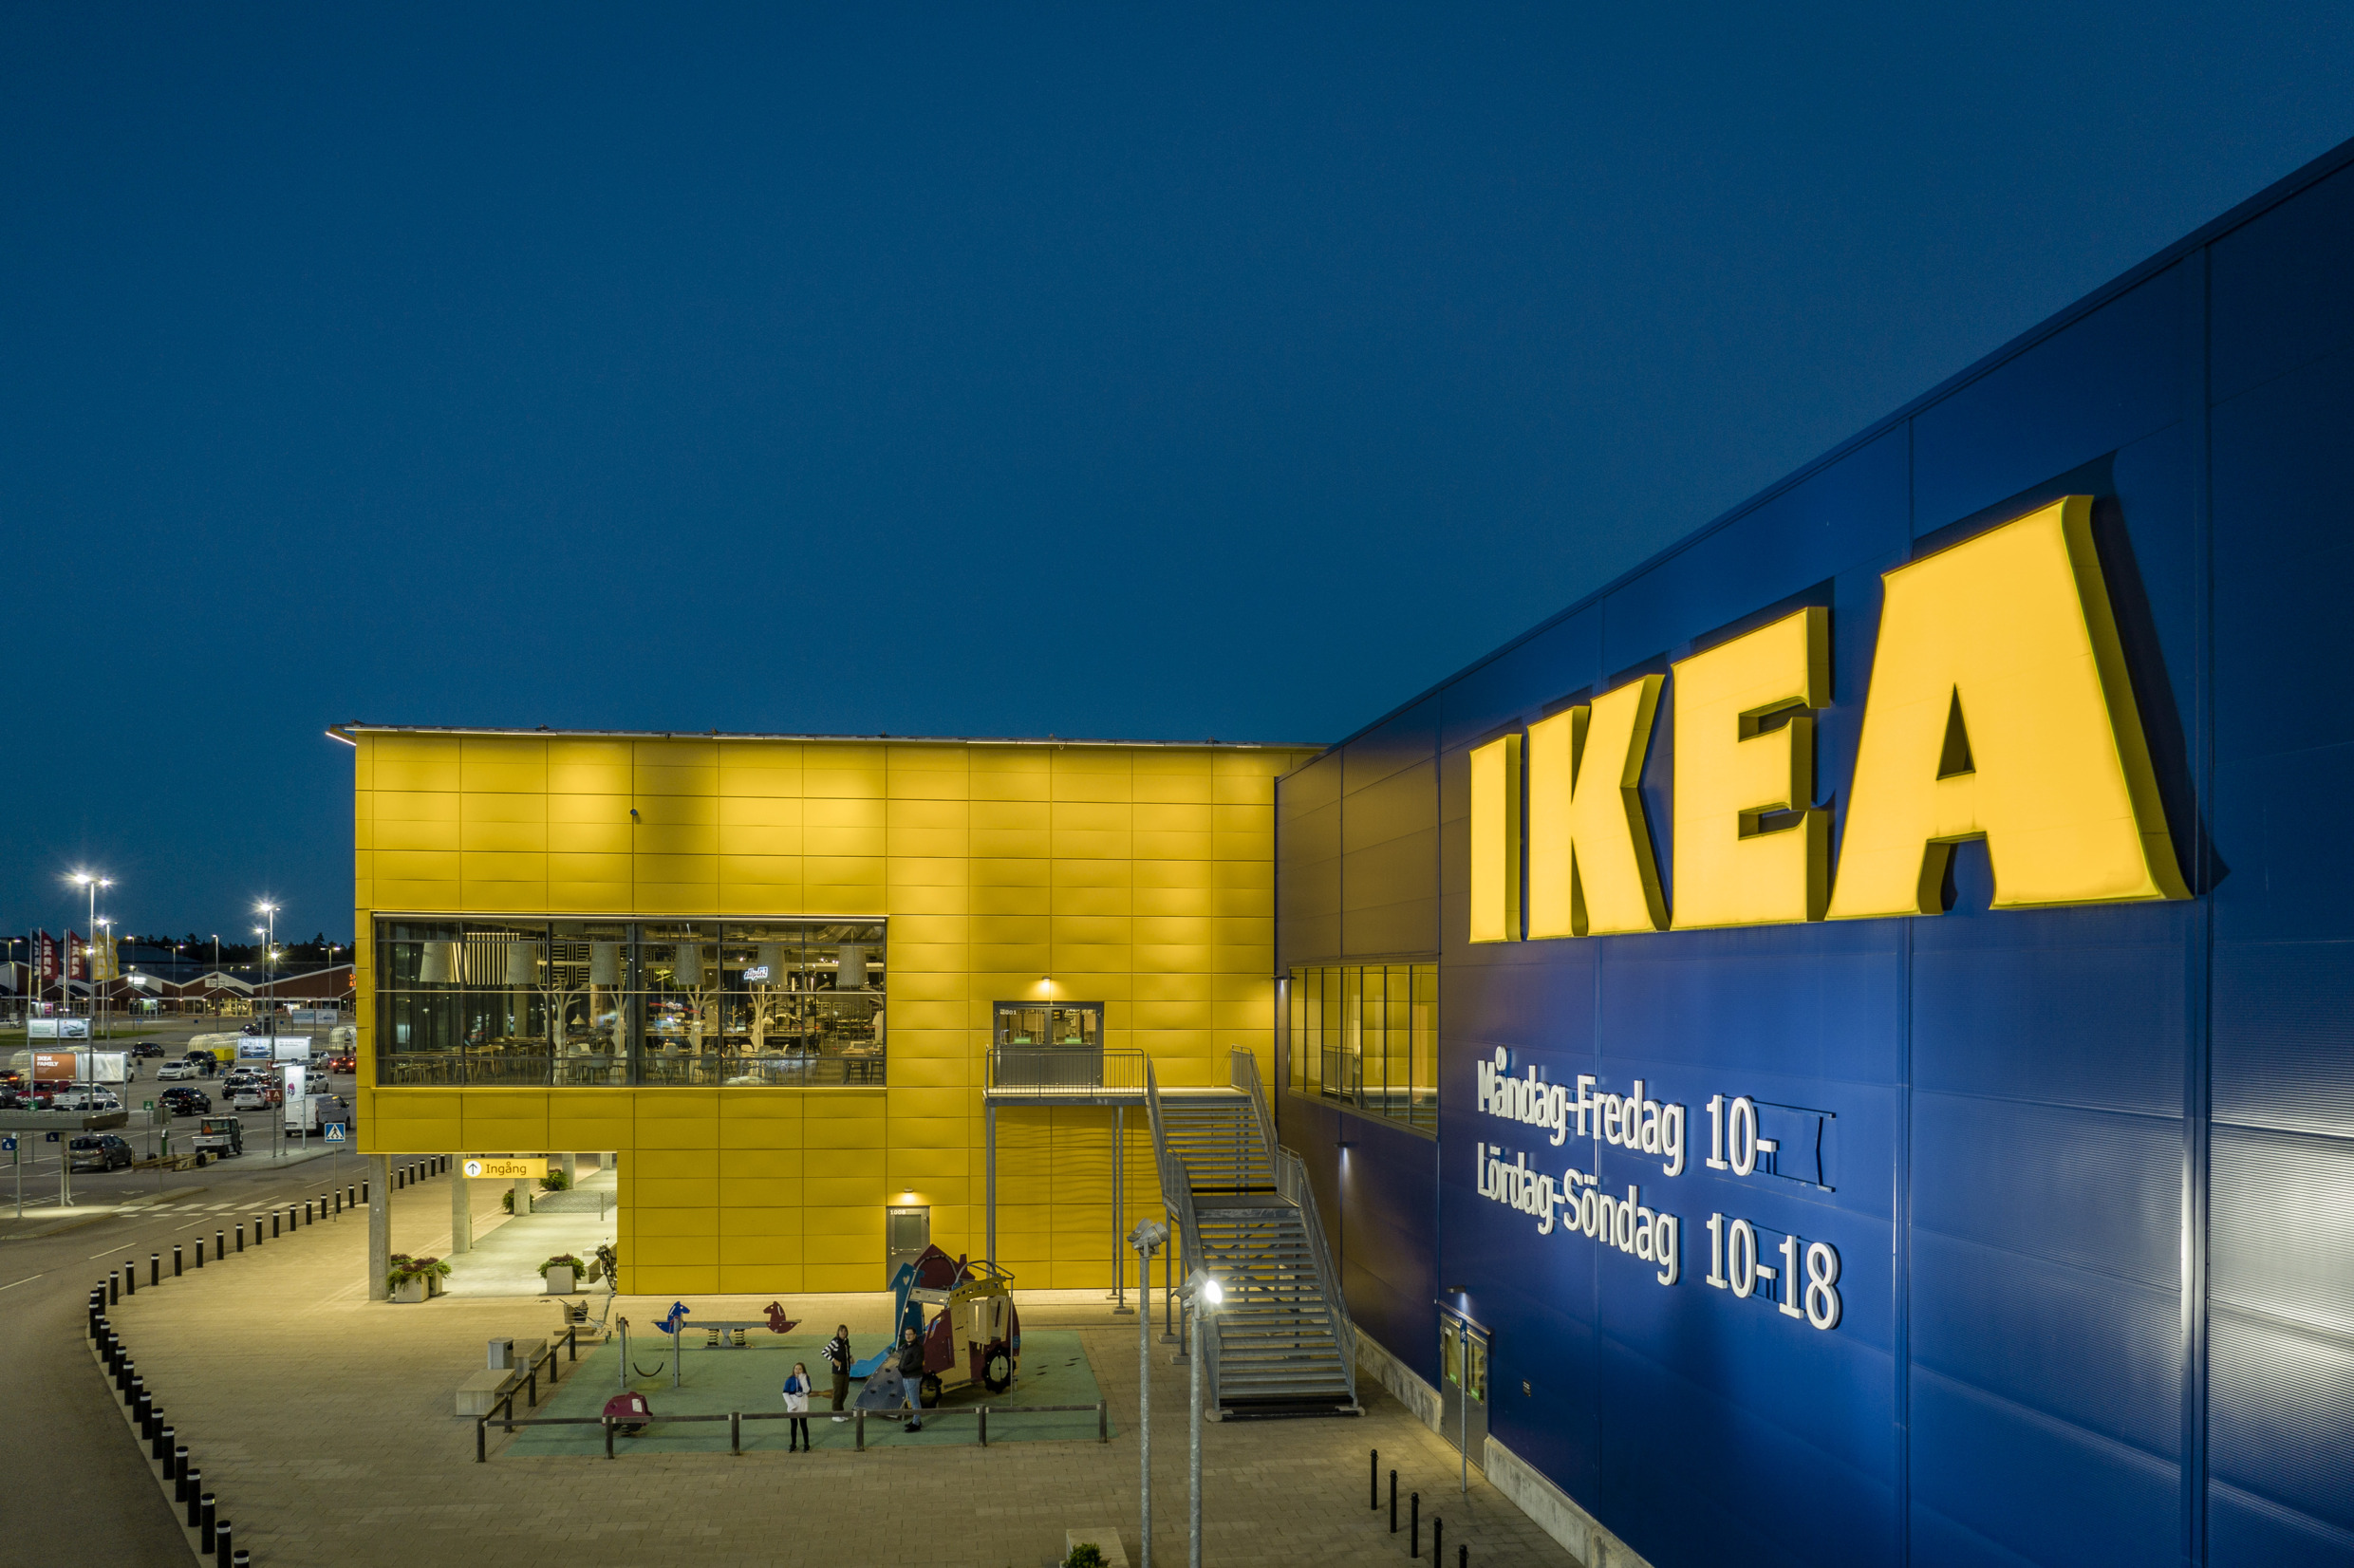 IKEA llega a Chile y abre su primera tienda a fines de junio en el Open Kennedy de Santiago